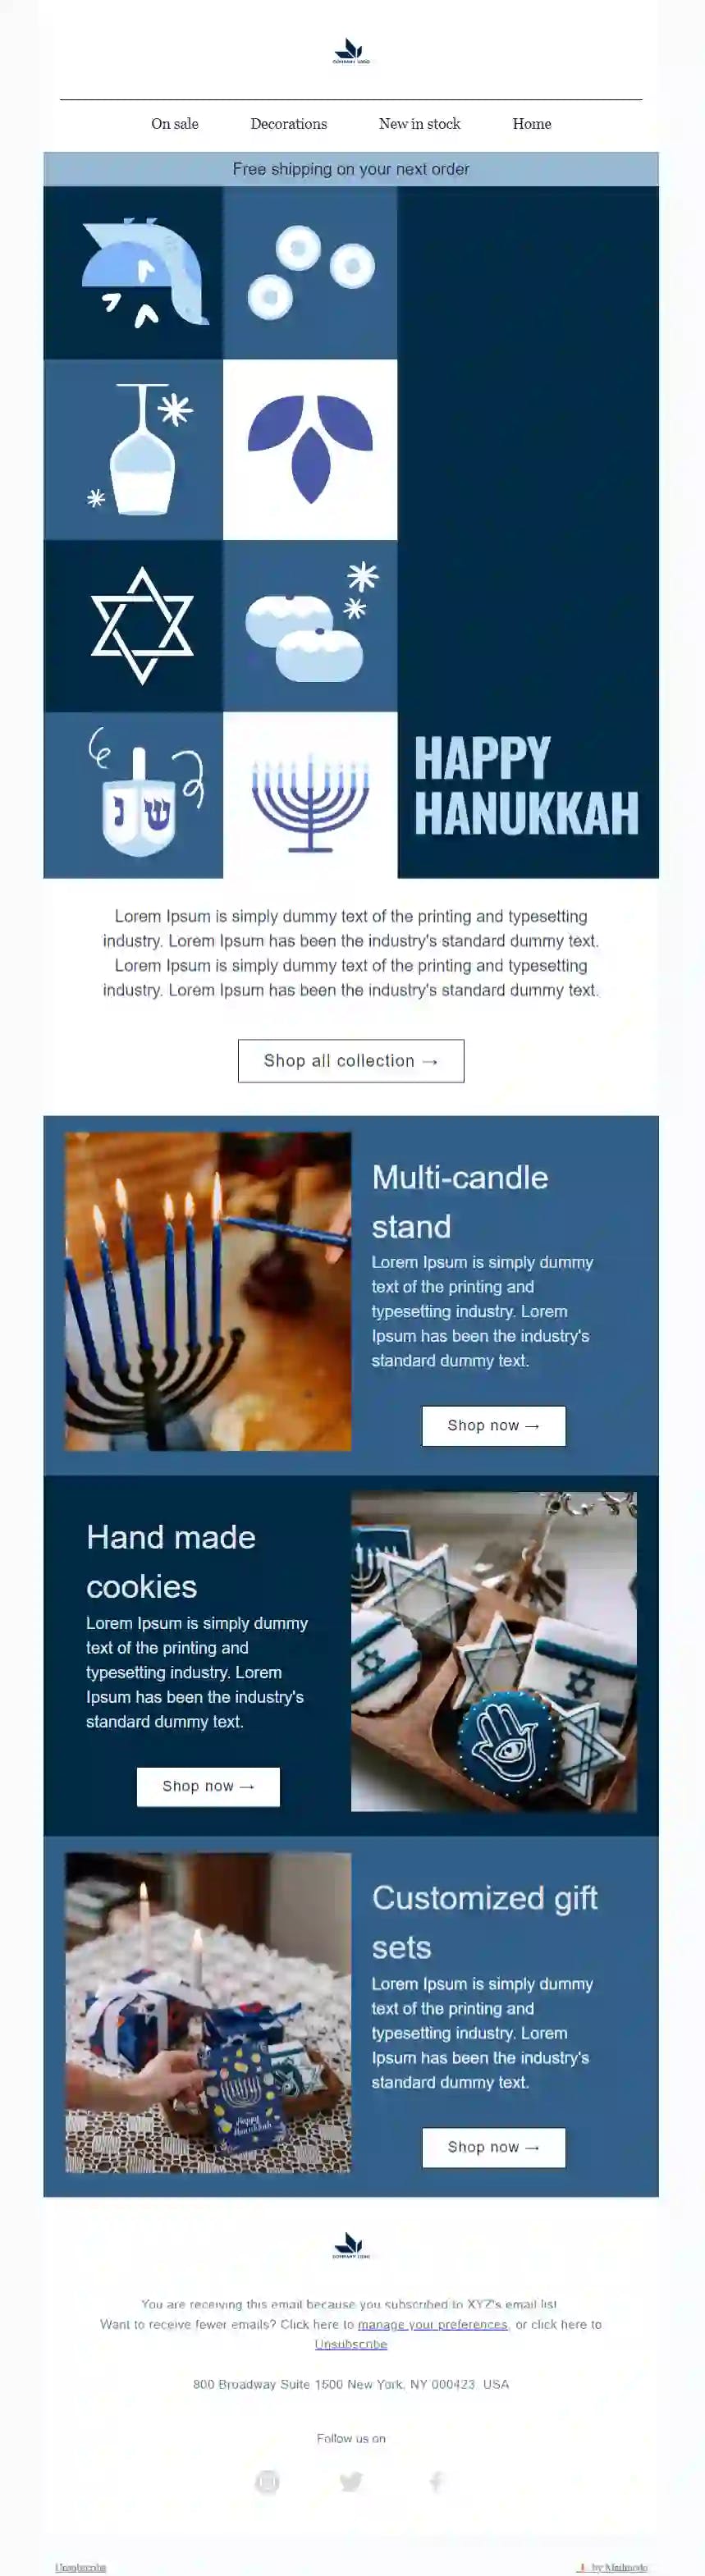 Free Hanukkah Email Template